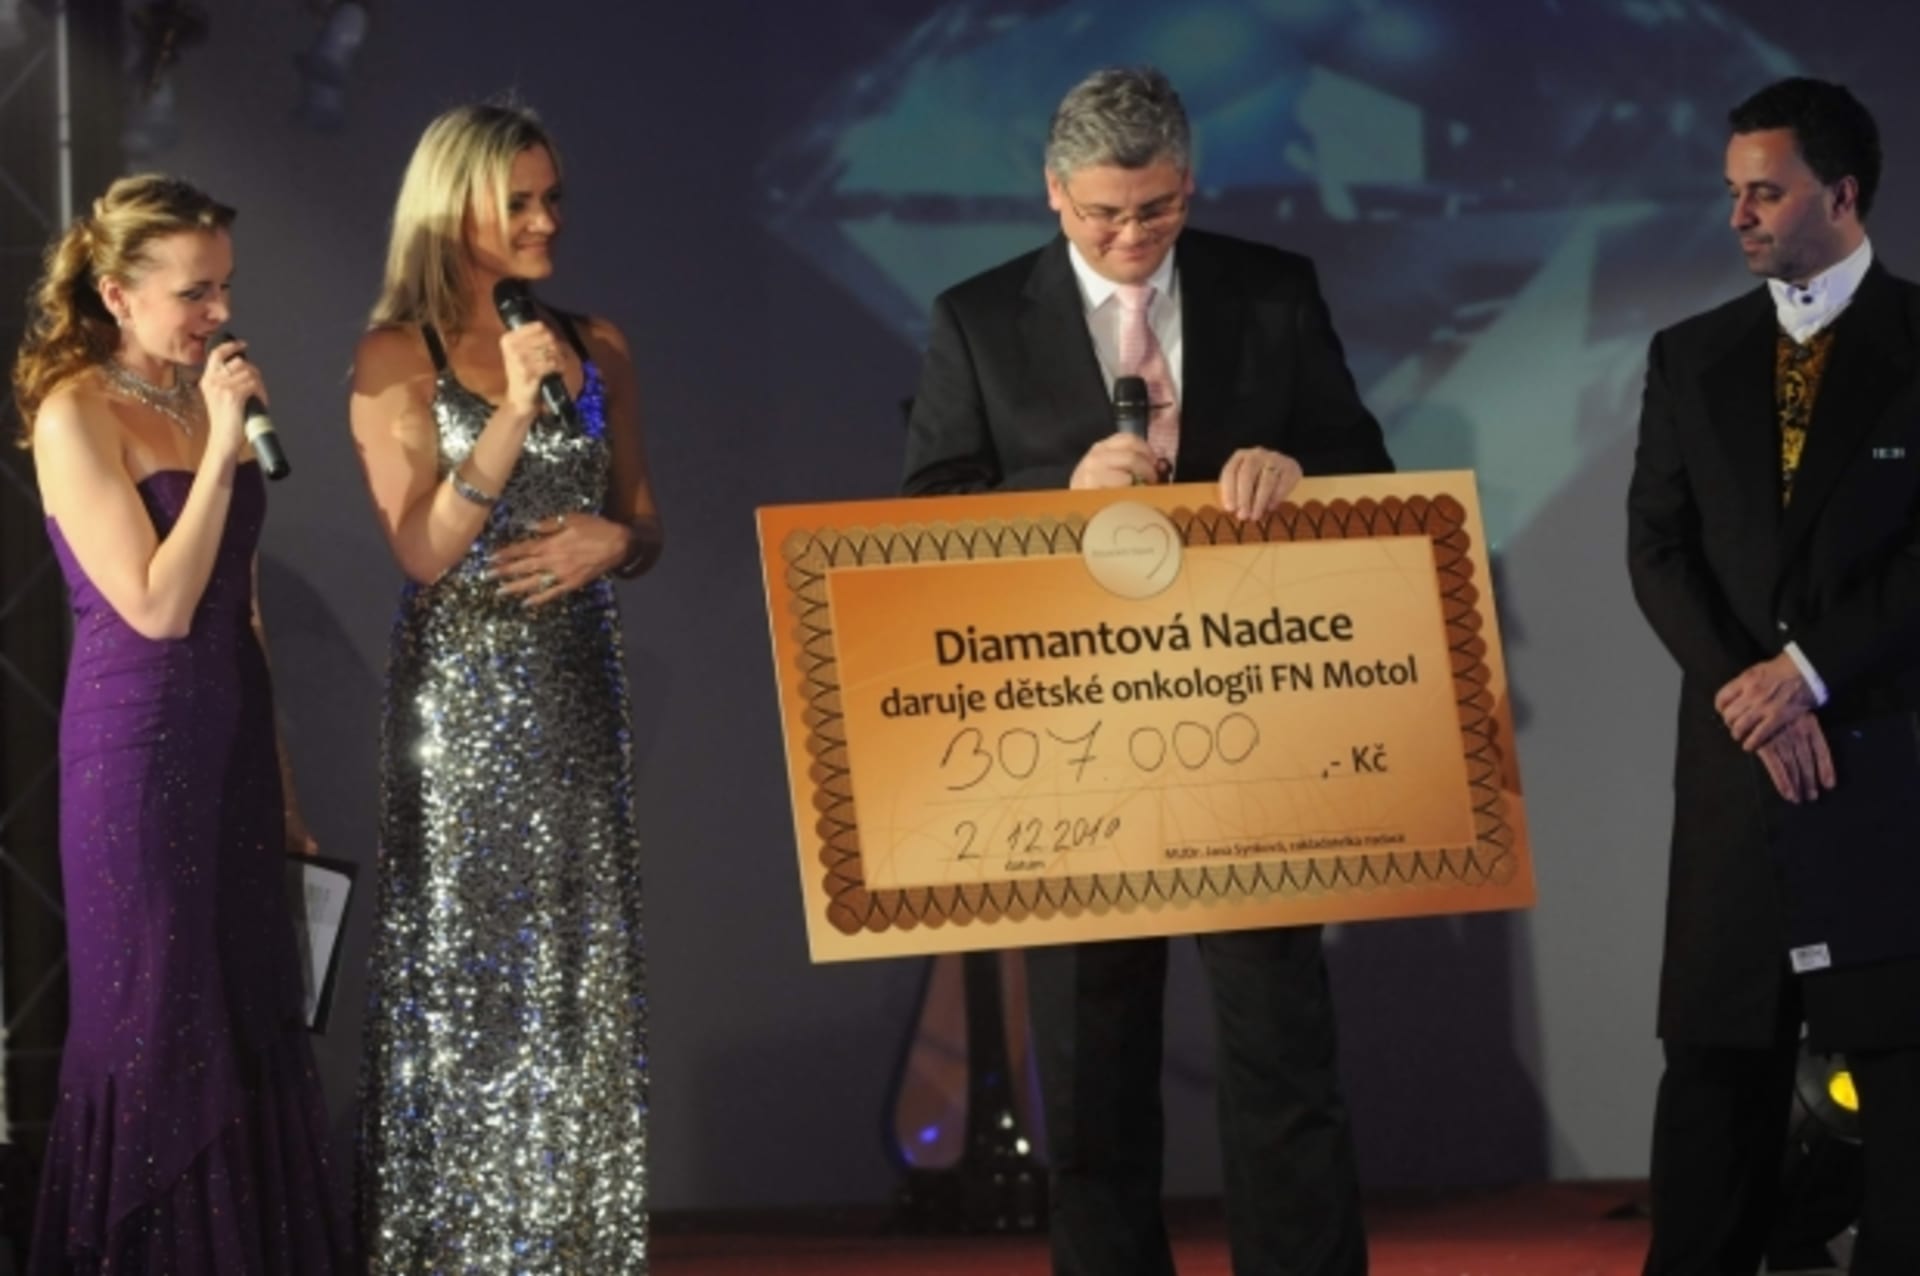 Martina Kociánová ráda podporuje charitativní akce